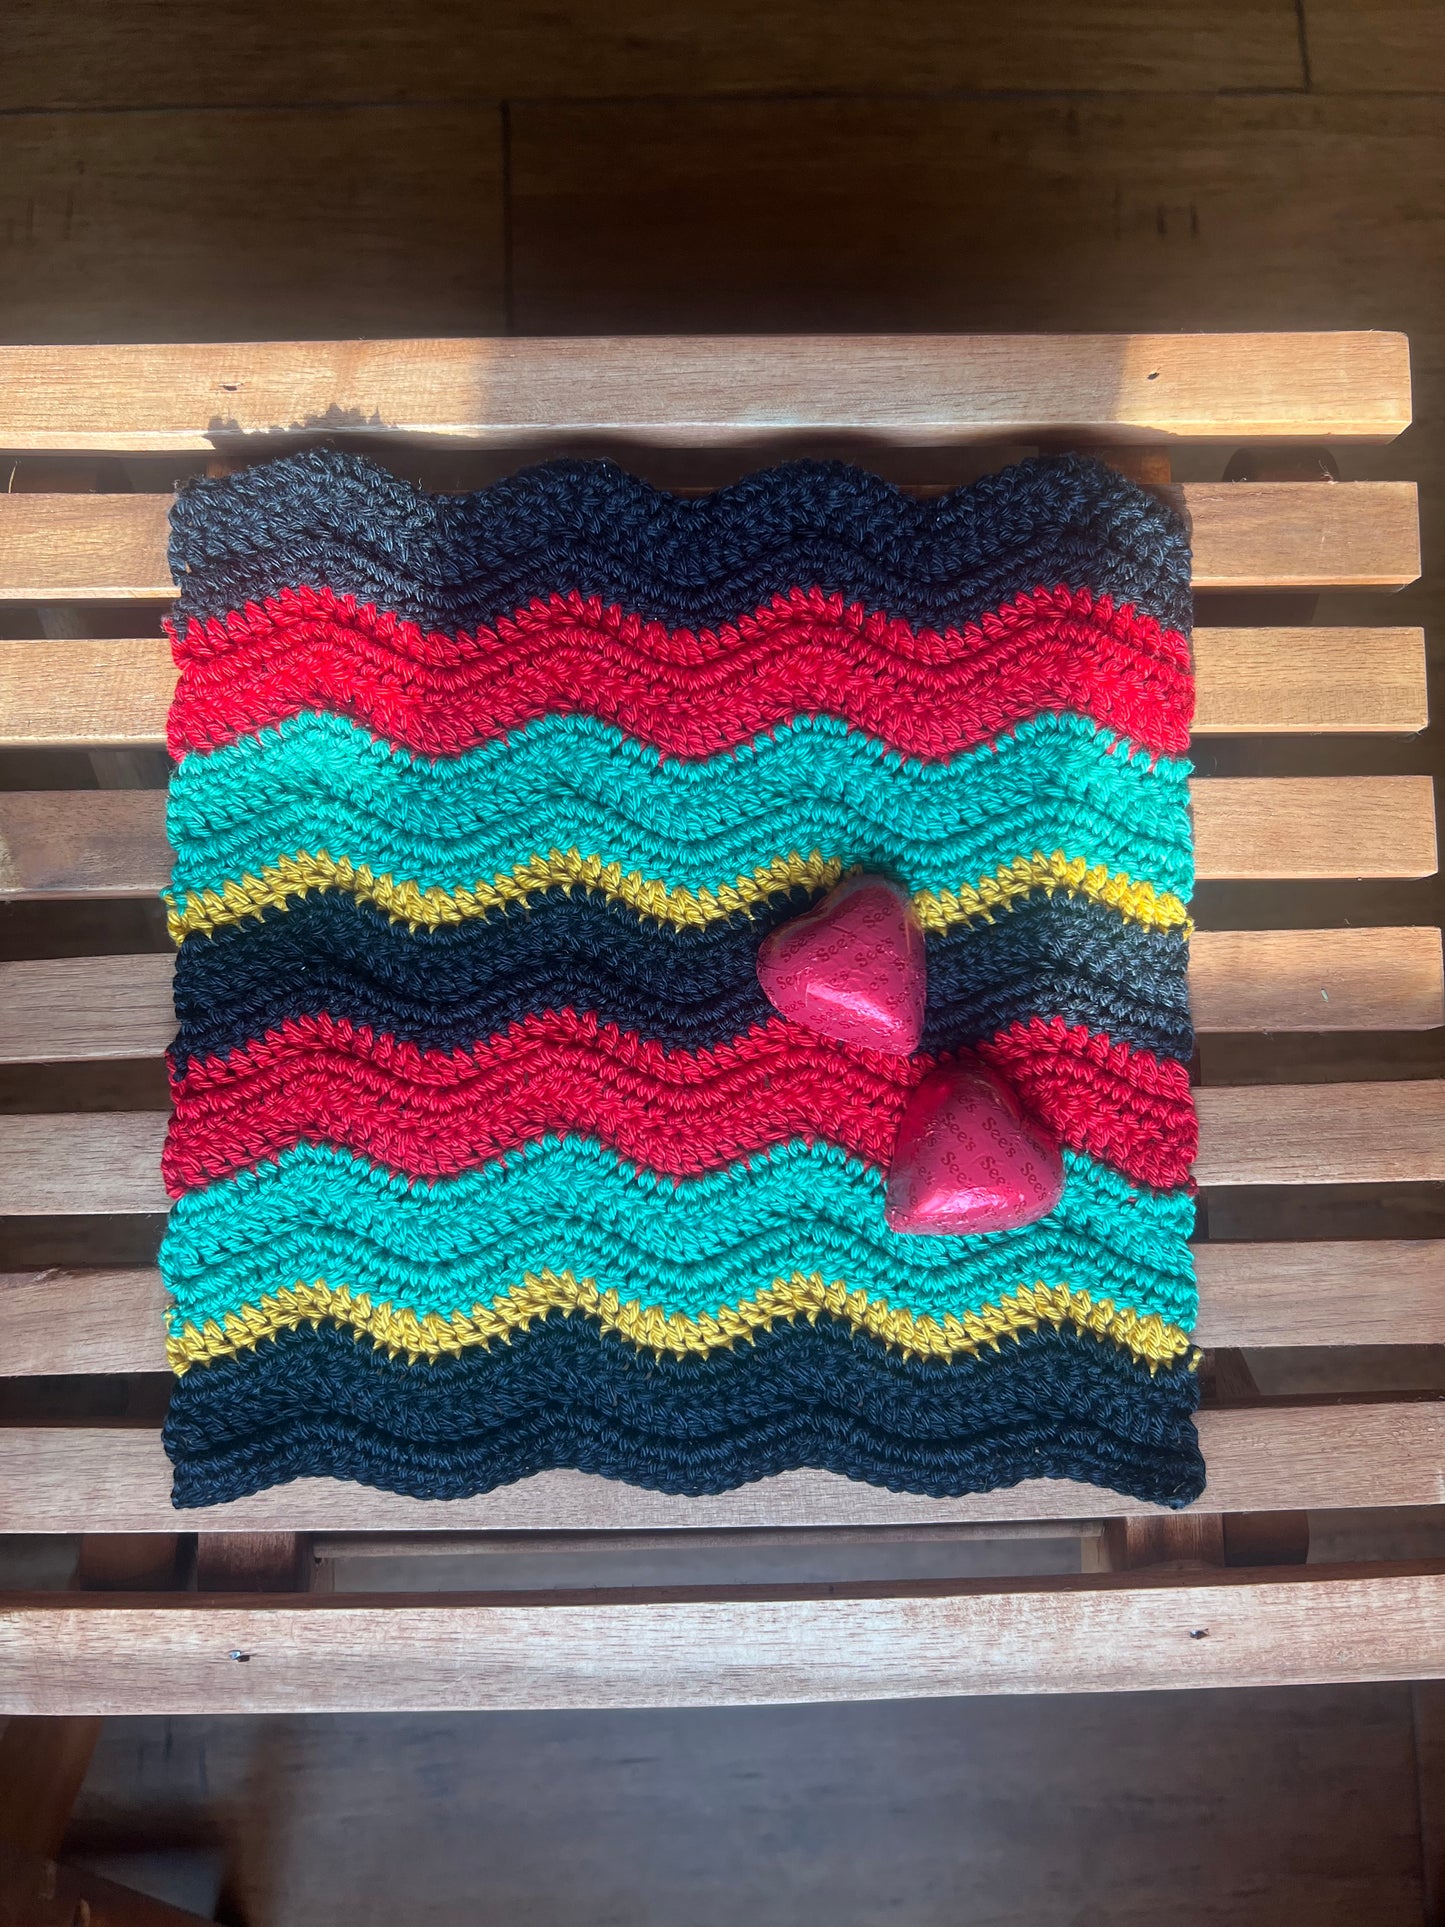 Crochet Mat in Pan-African Ripple Design